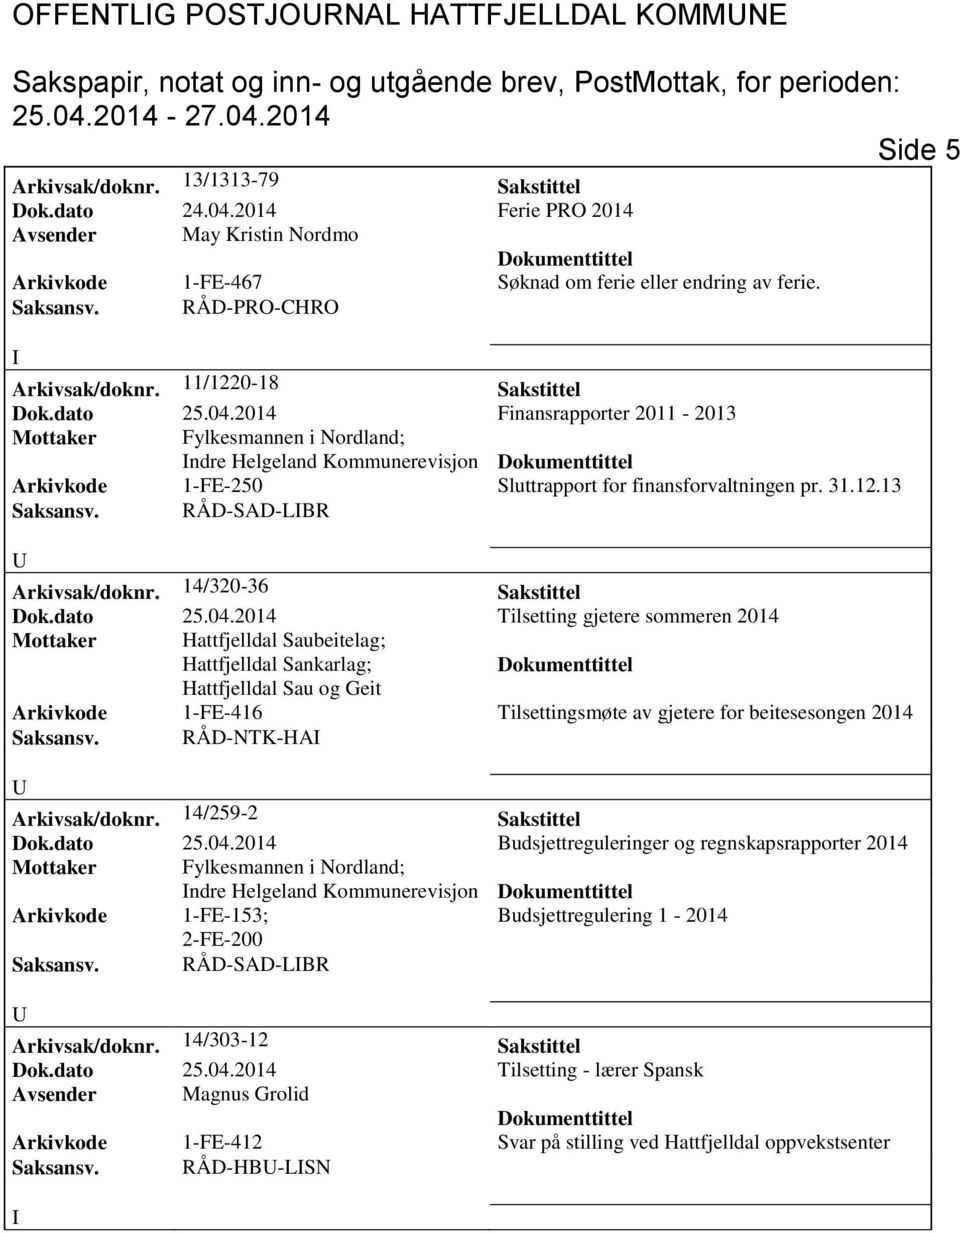 2014 Finansrapporter 2011-2013 Mottaker Fylkesmannen i Nordland; ndre Helgeland Kommunerevisjon Arkivkode 1-FE-250 Sluttrapport for finansforvaltningen pr. 31.12.13 Saksansv.